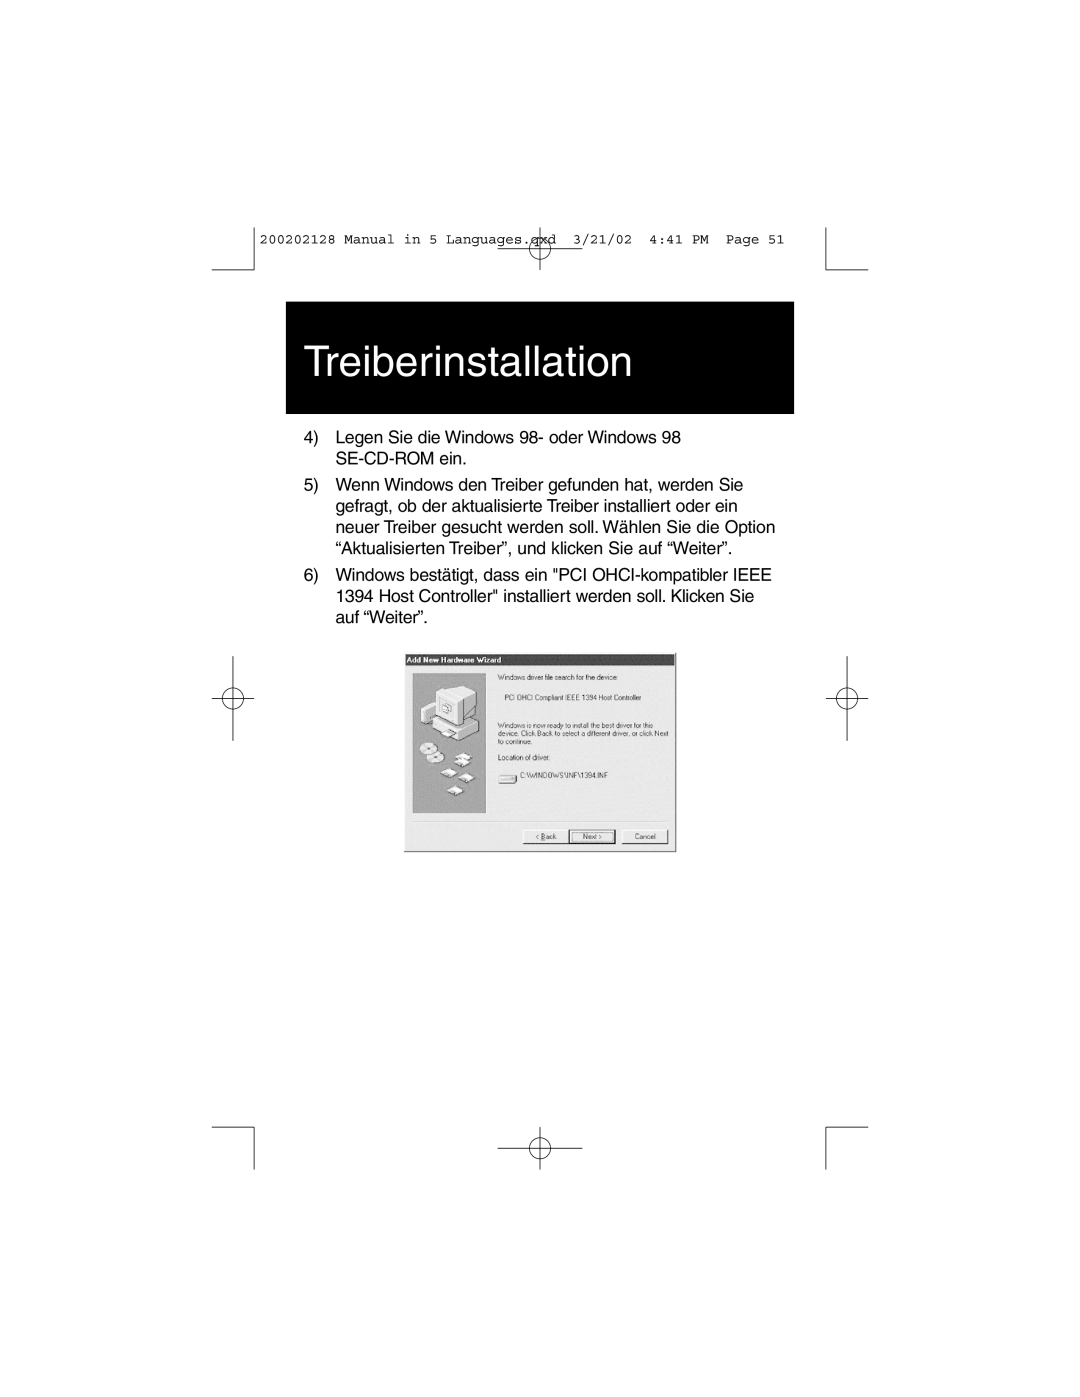 Tripp Lite F200-003-R user manual Treiberinstallation, Legen Sie die Windows 98- oder Windows 98 SE-CD-ROM ein 